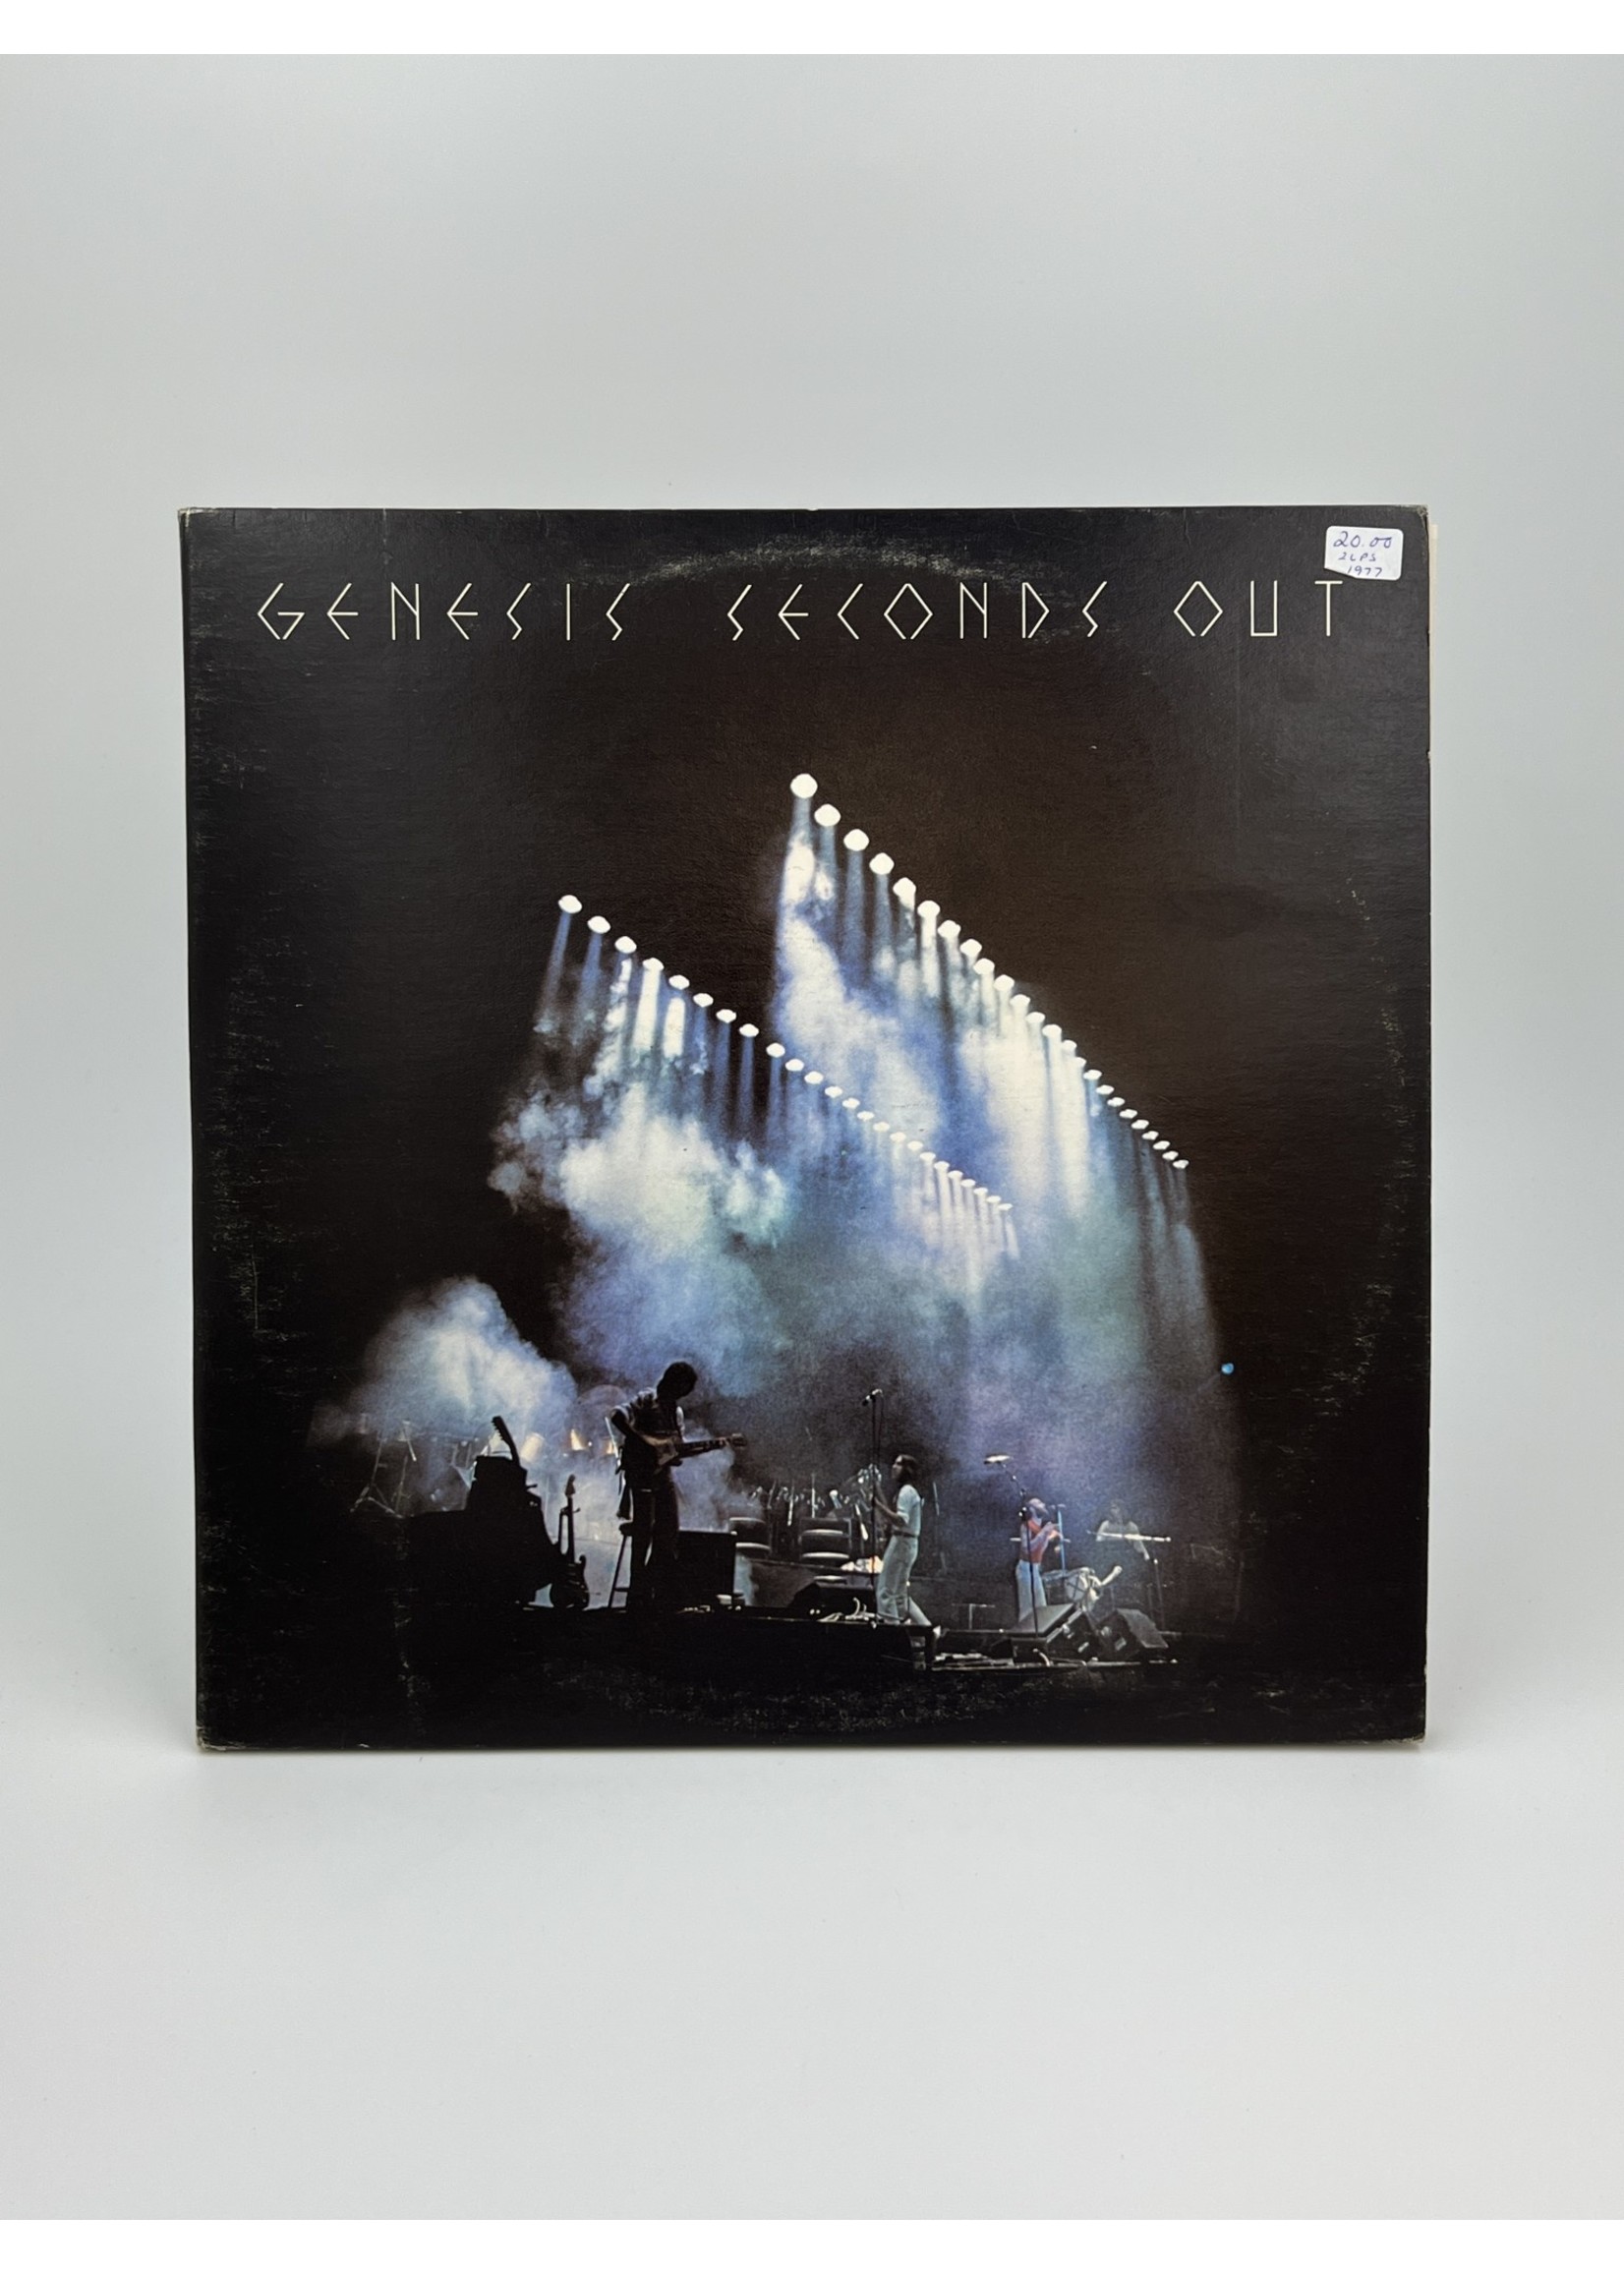 LP Genesis Seconds Out LP Record